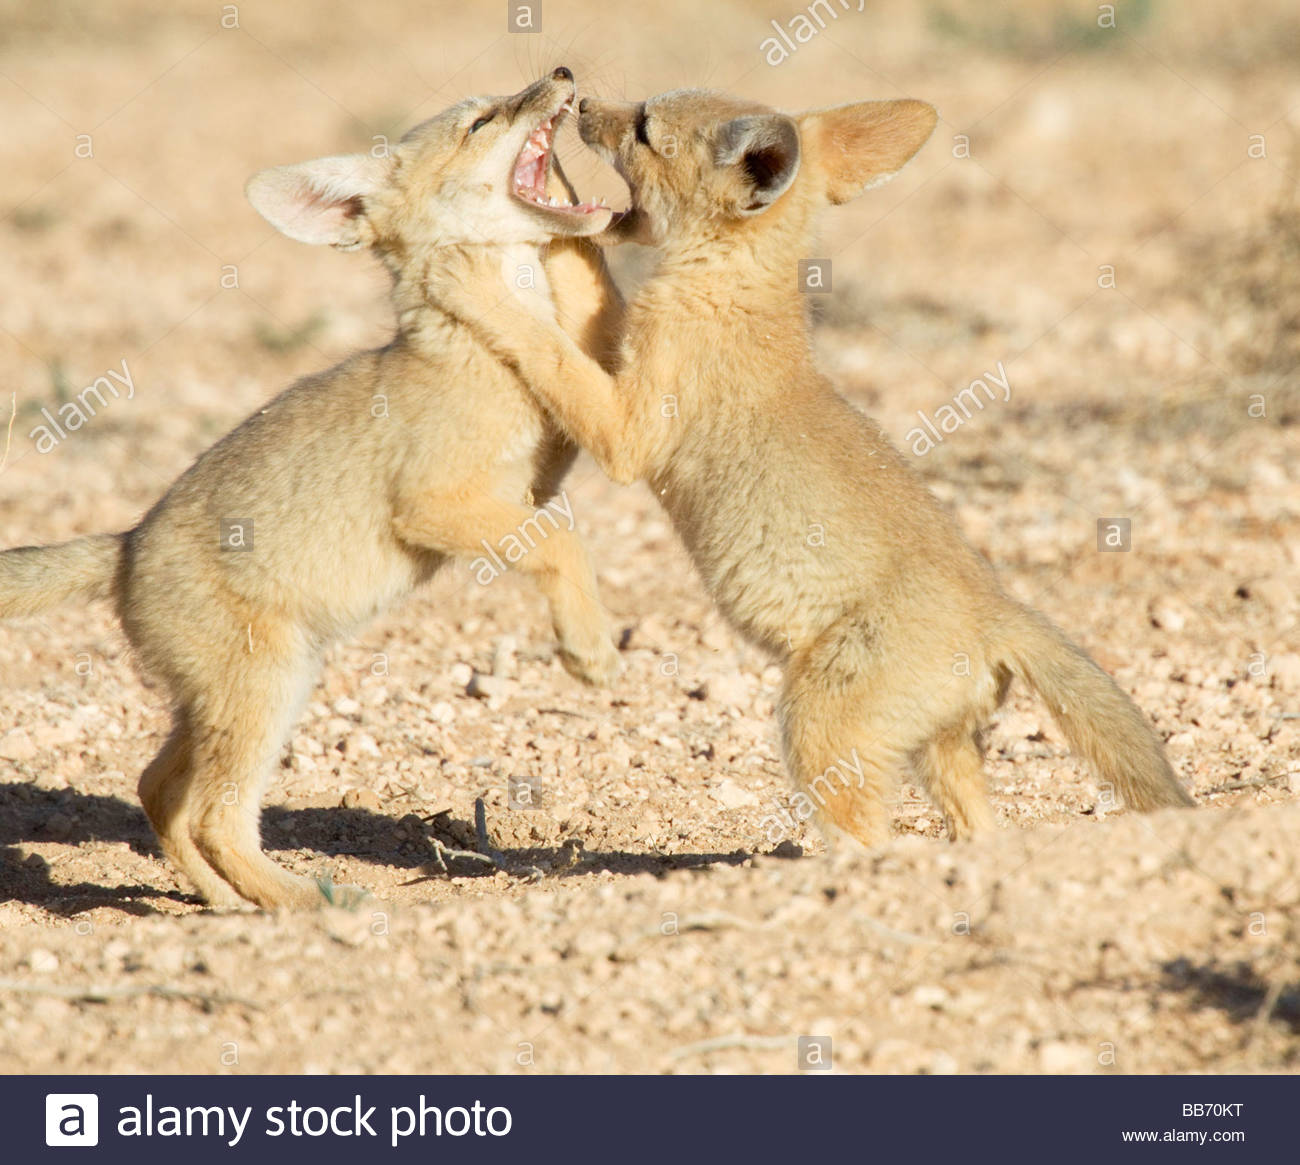 kit-foxes-vulpes-macrotis-pups-playing-roughhousing-BB70KT.jpg